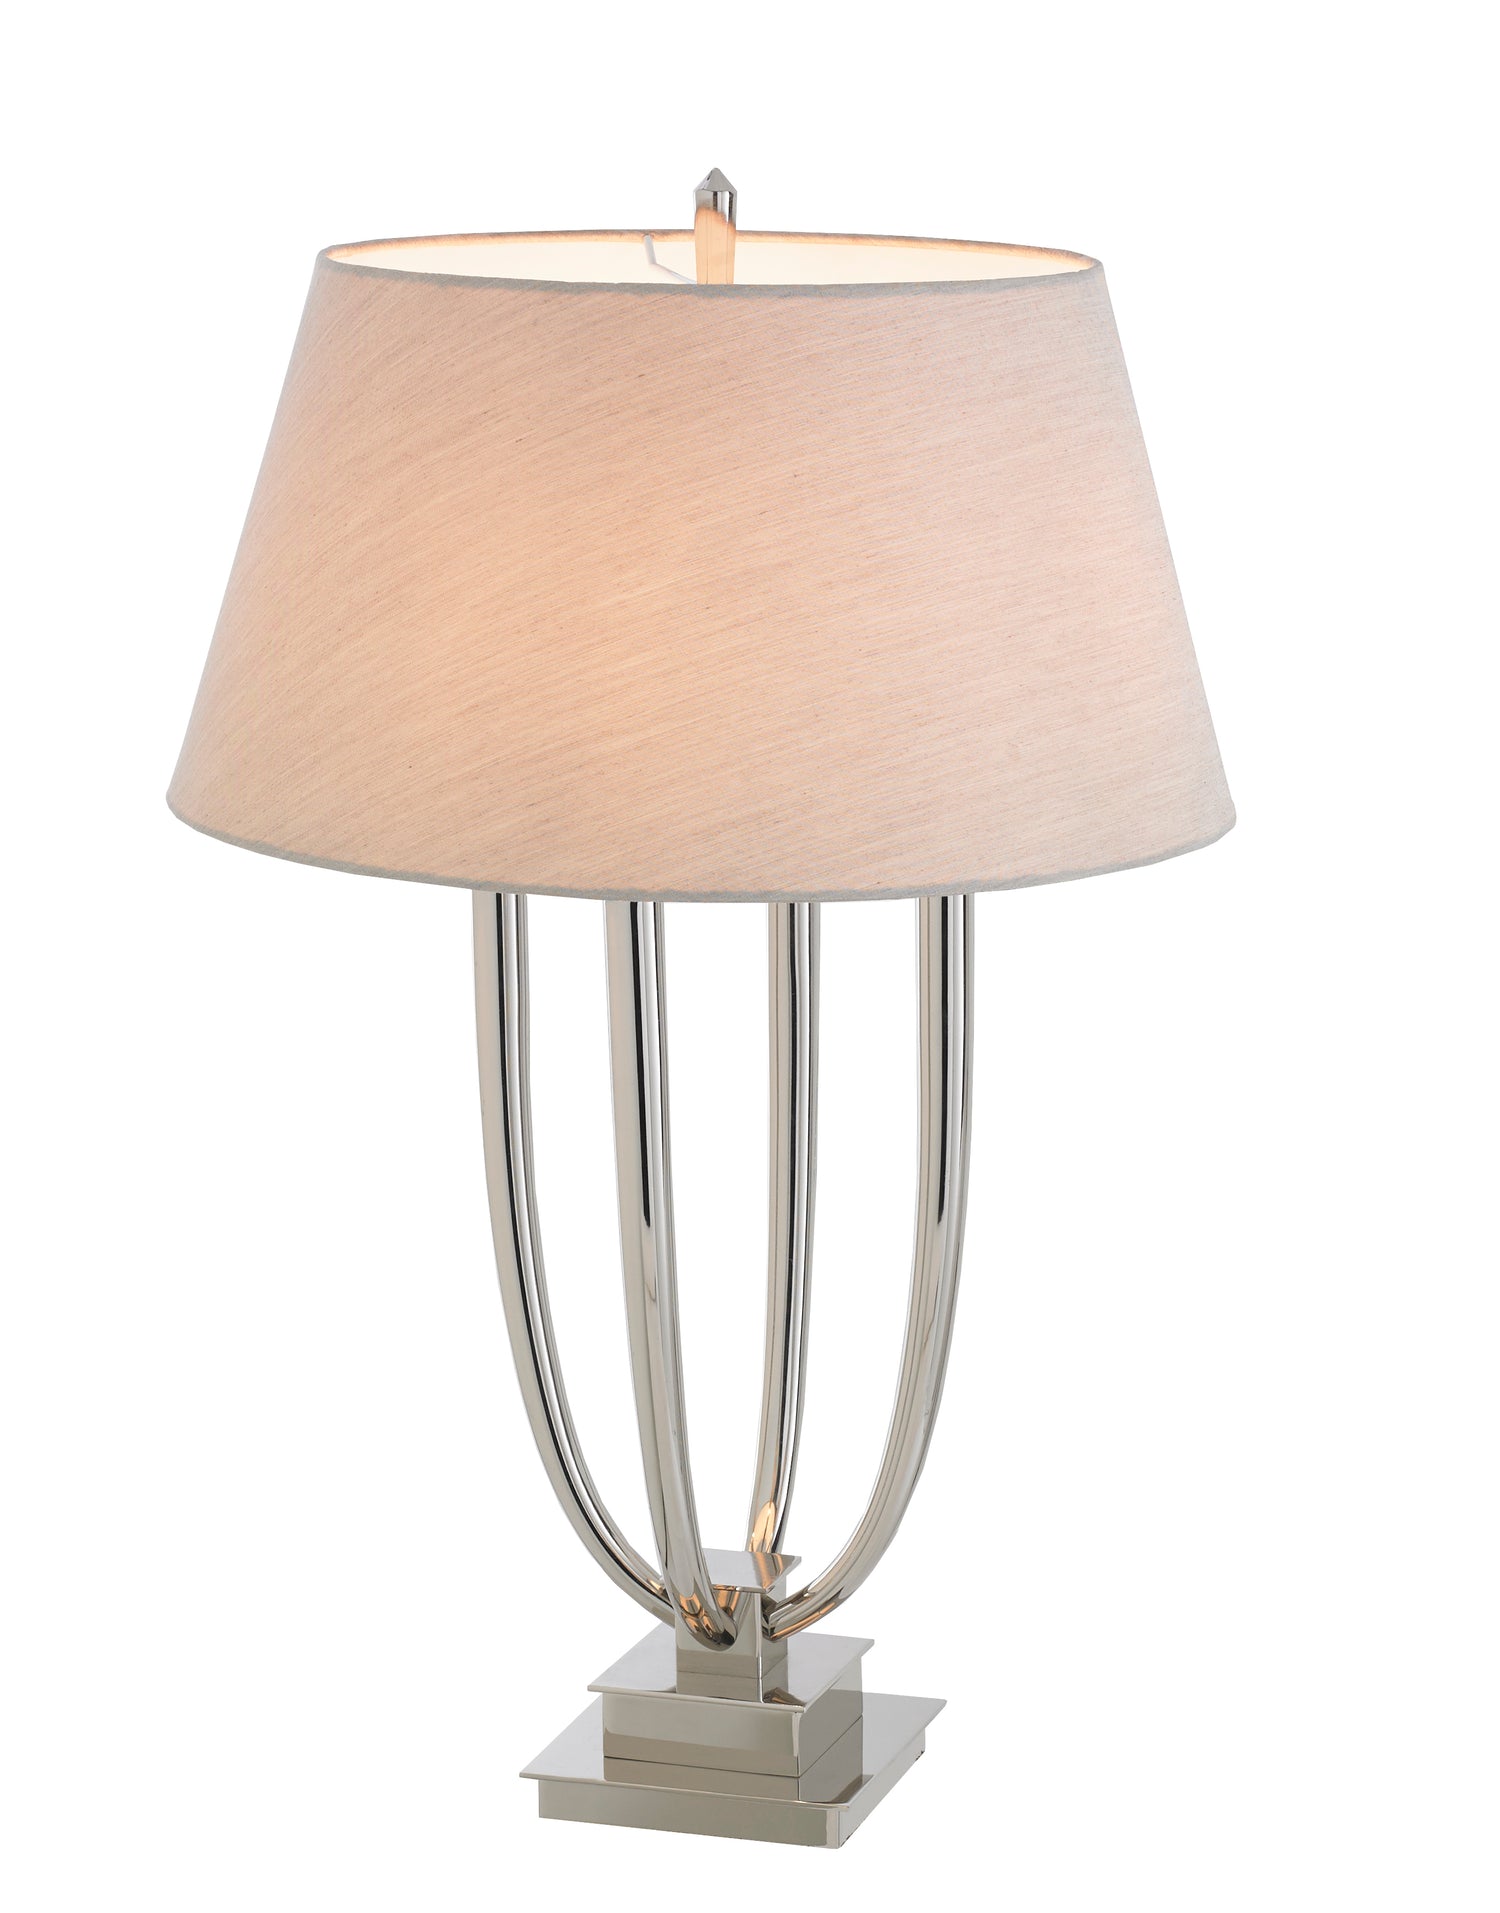  RVAstley-RV Astley Aurora Table Lamp Nickel-Silver 445 